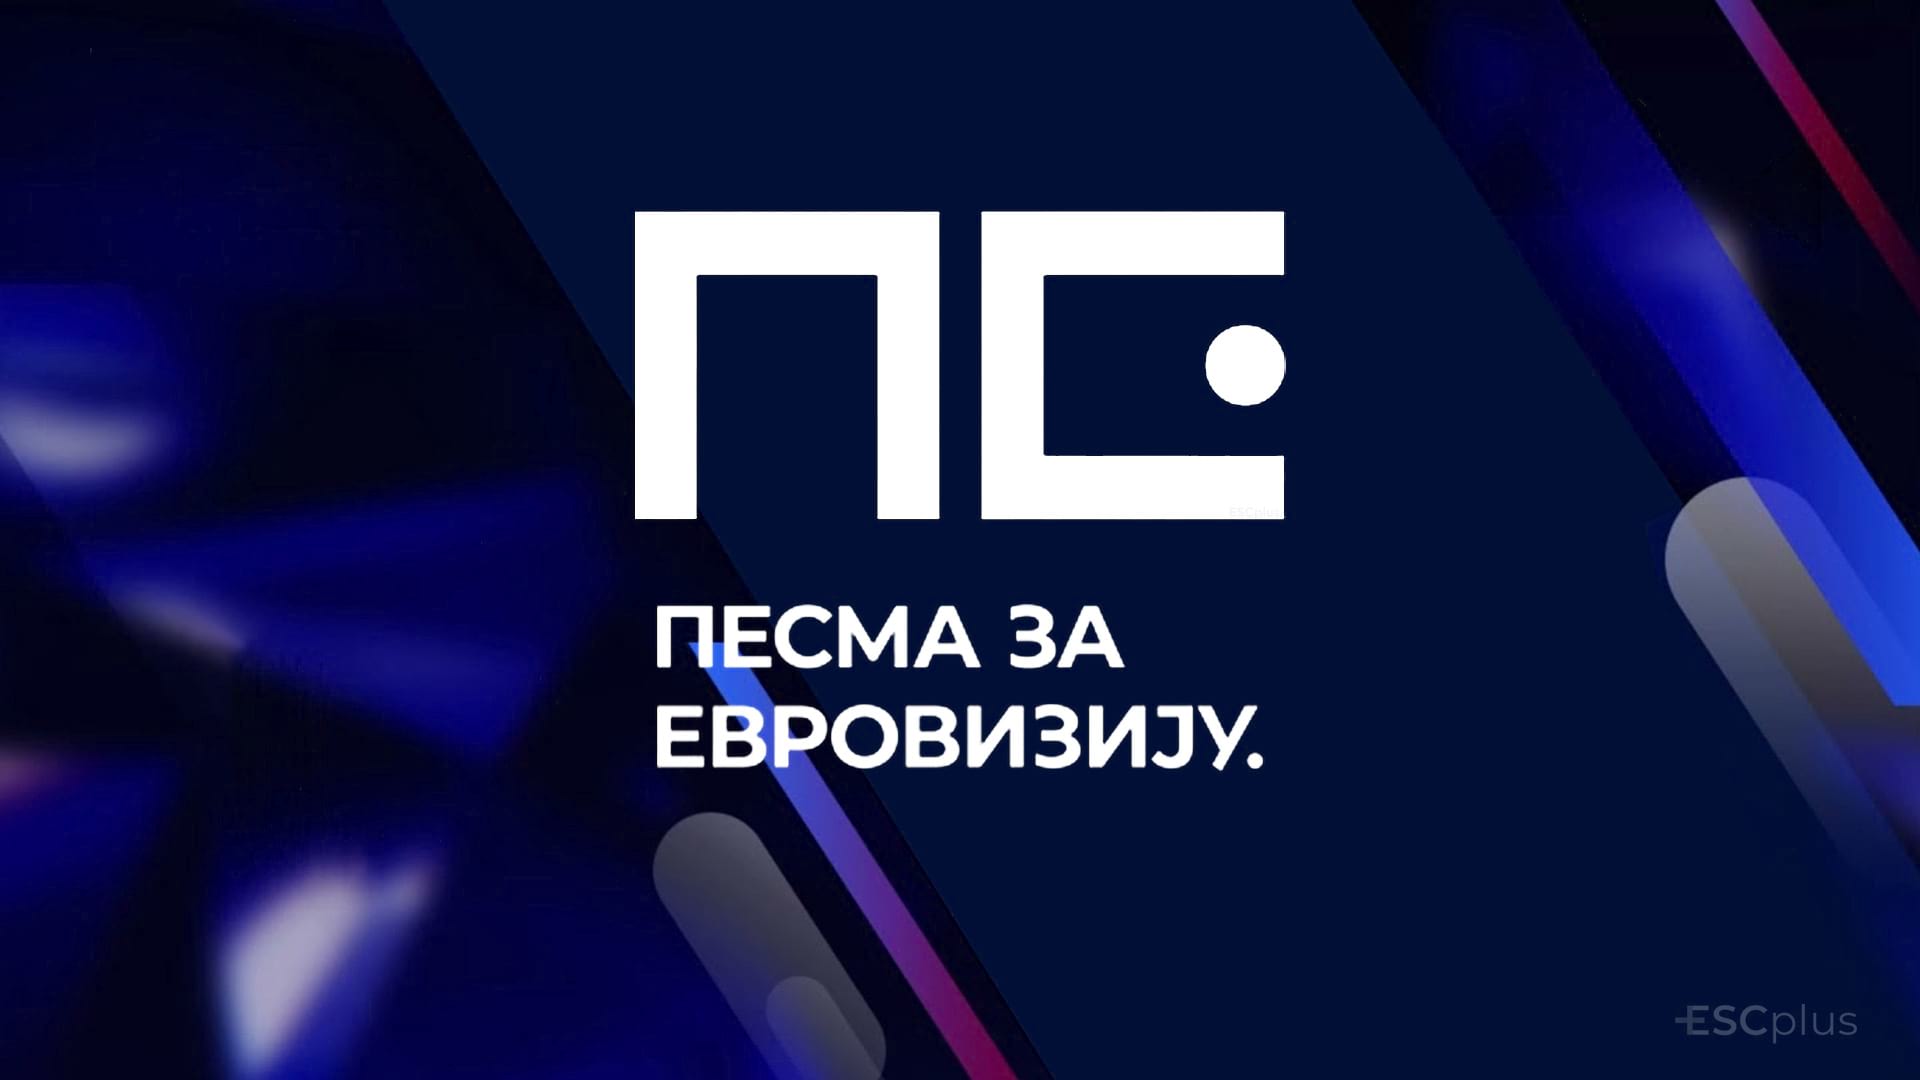 Полуфинале Евровизије 2022 #1 у Србији